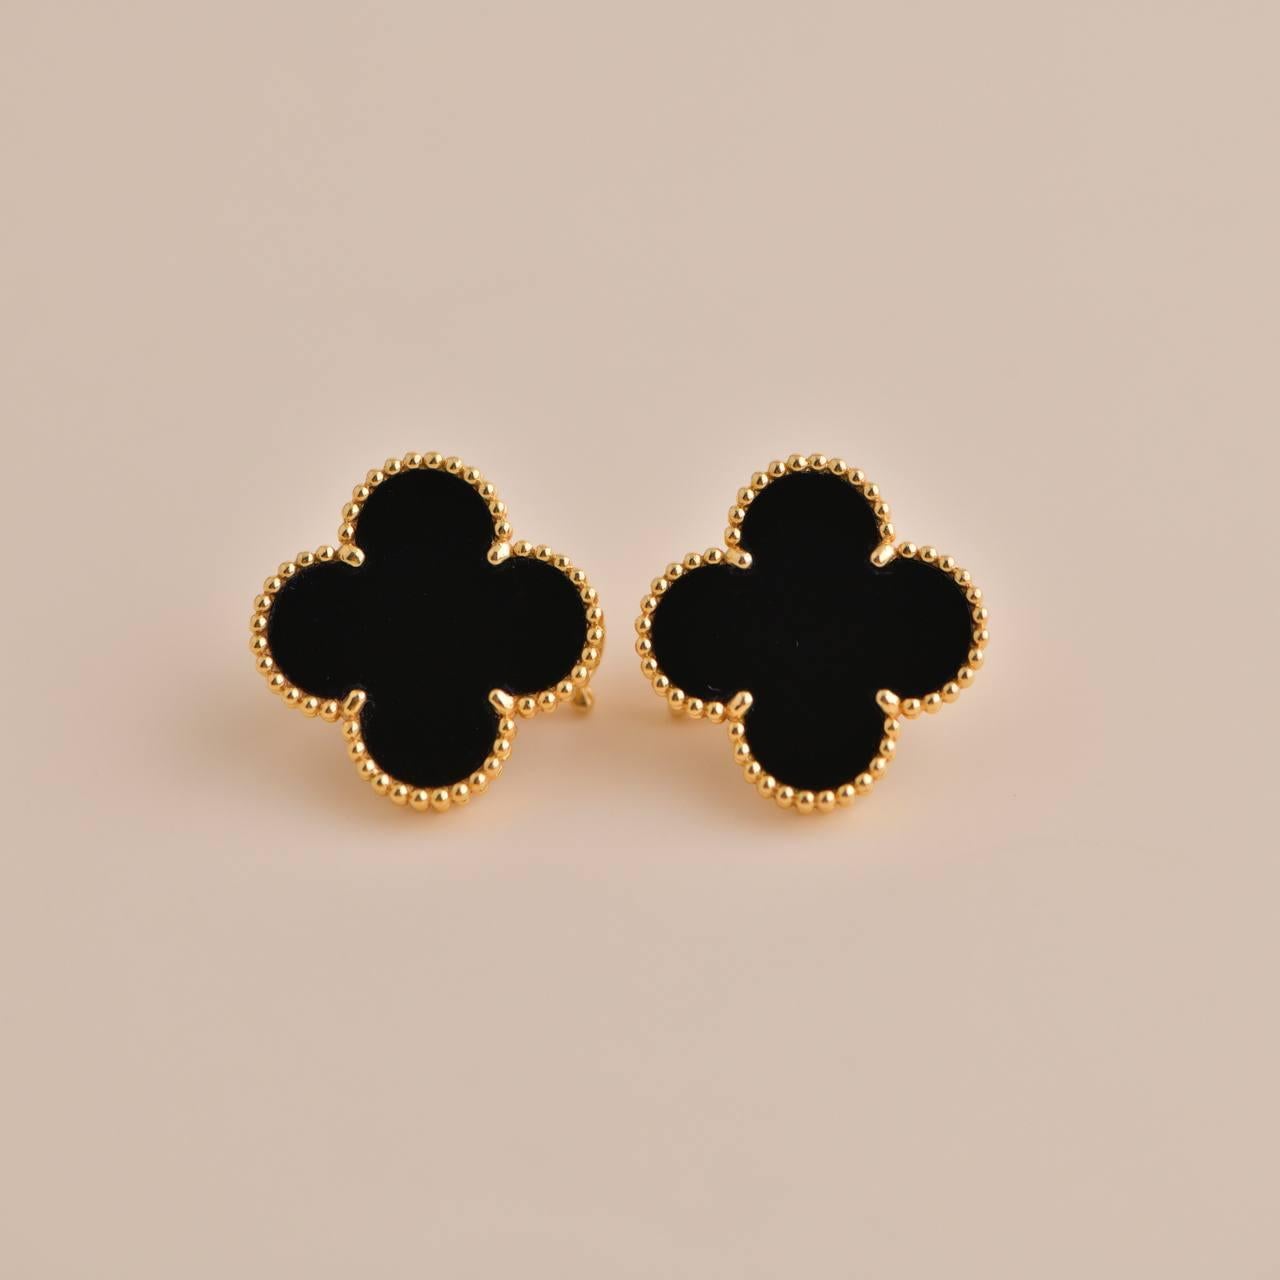 Uncut Van Cleef & Arpels Magic Alhambra Black Onyx Yellow Gold Earrings